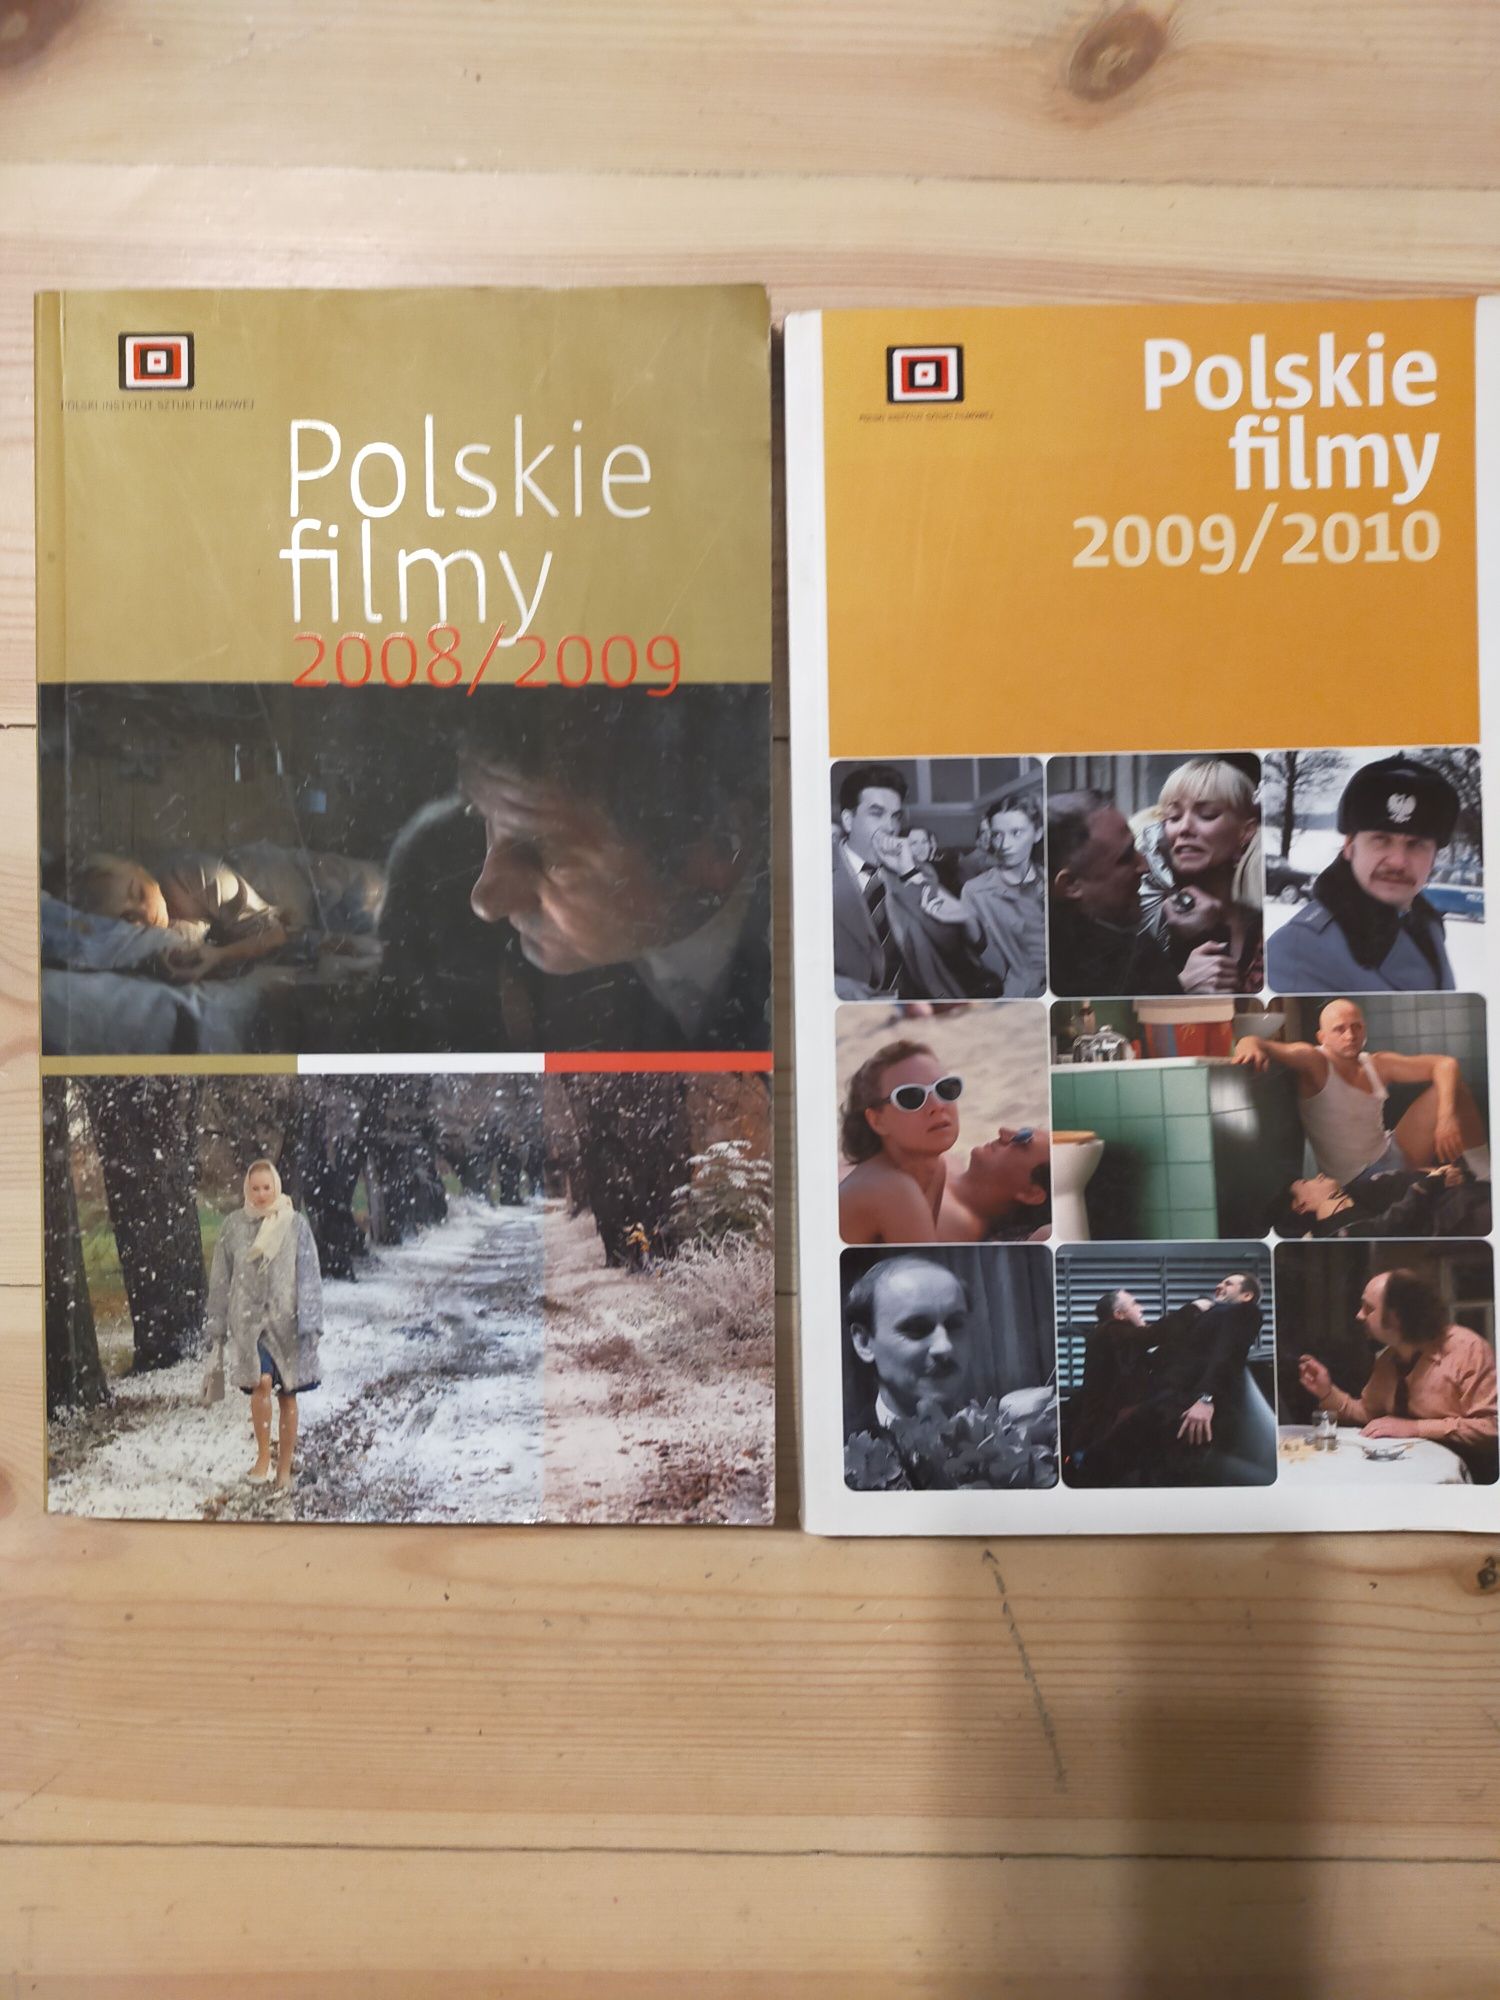 Polskie filmy 2009/2010